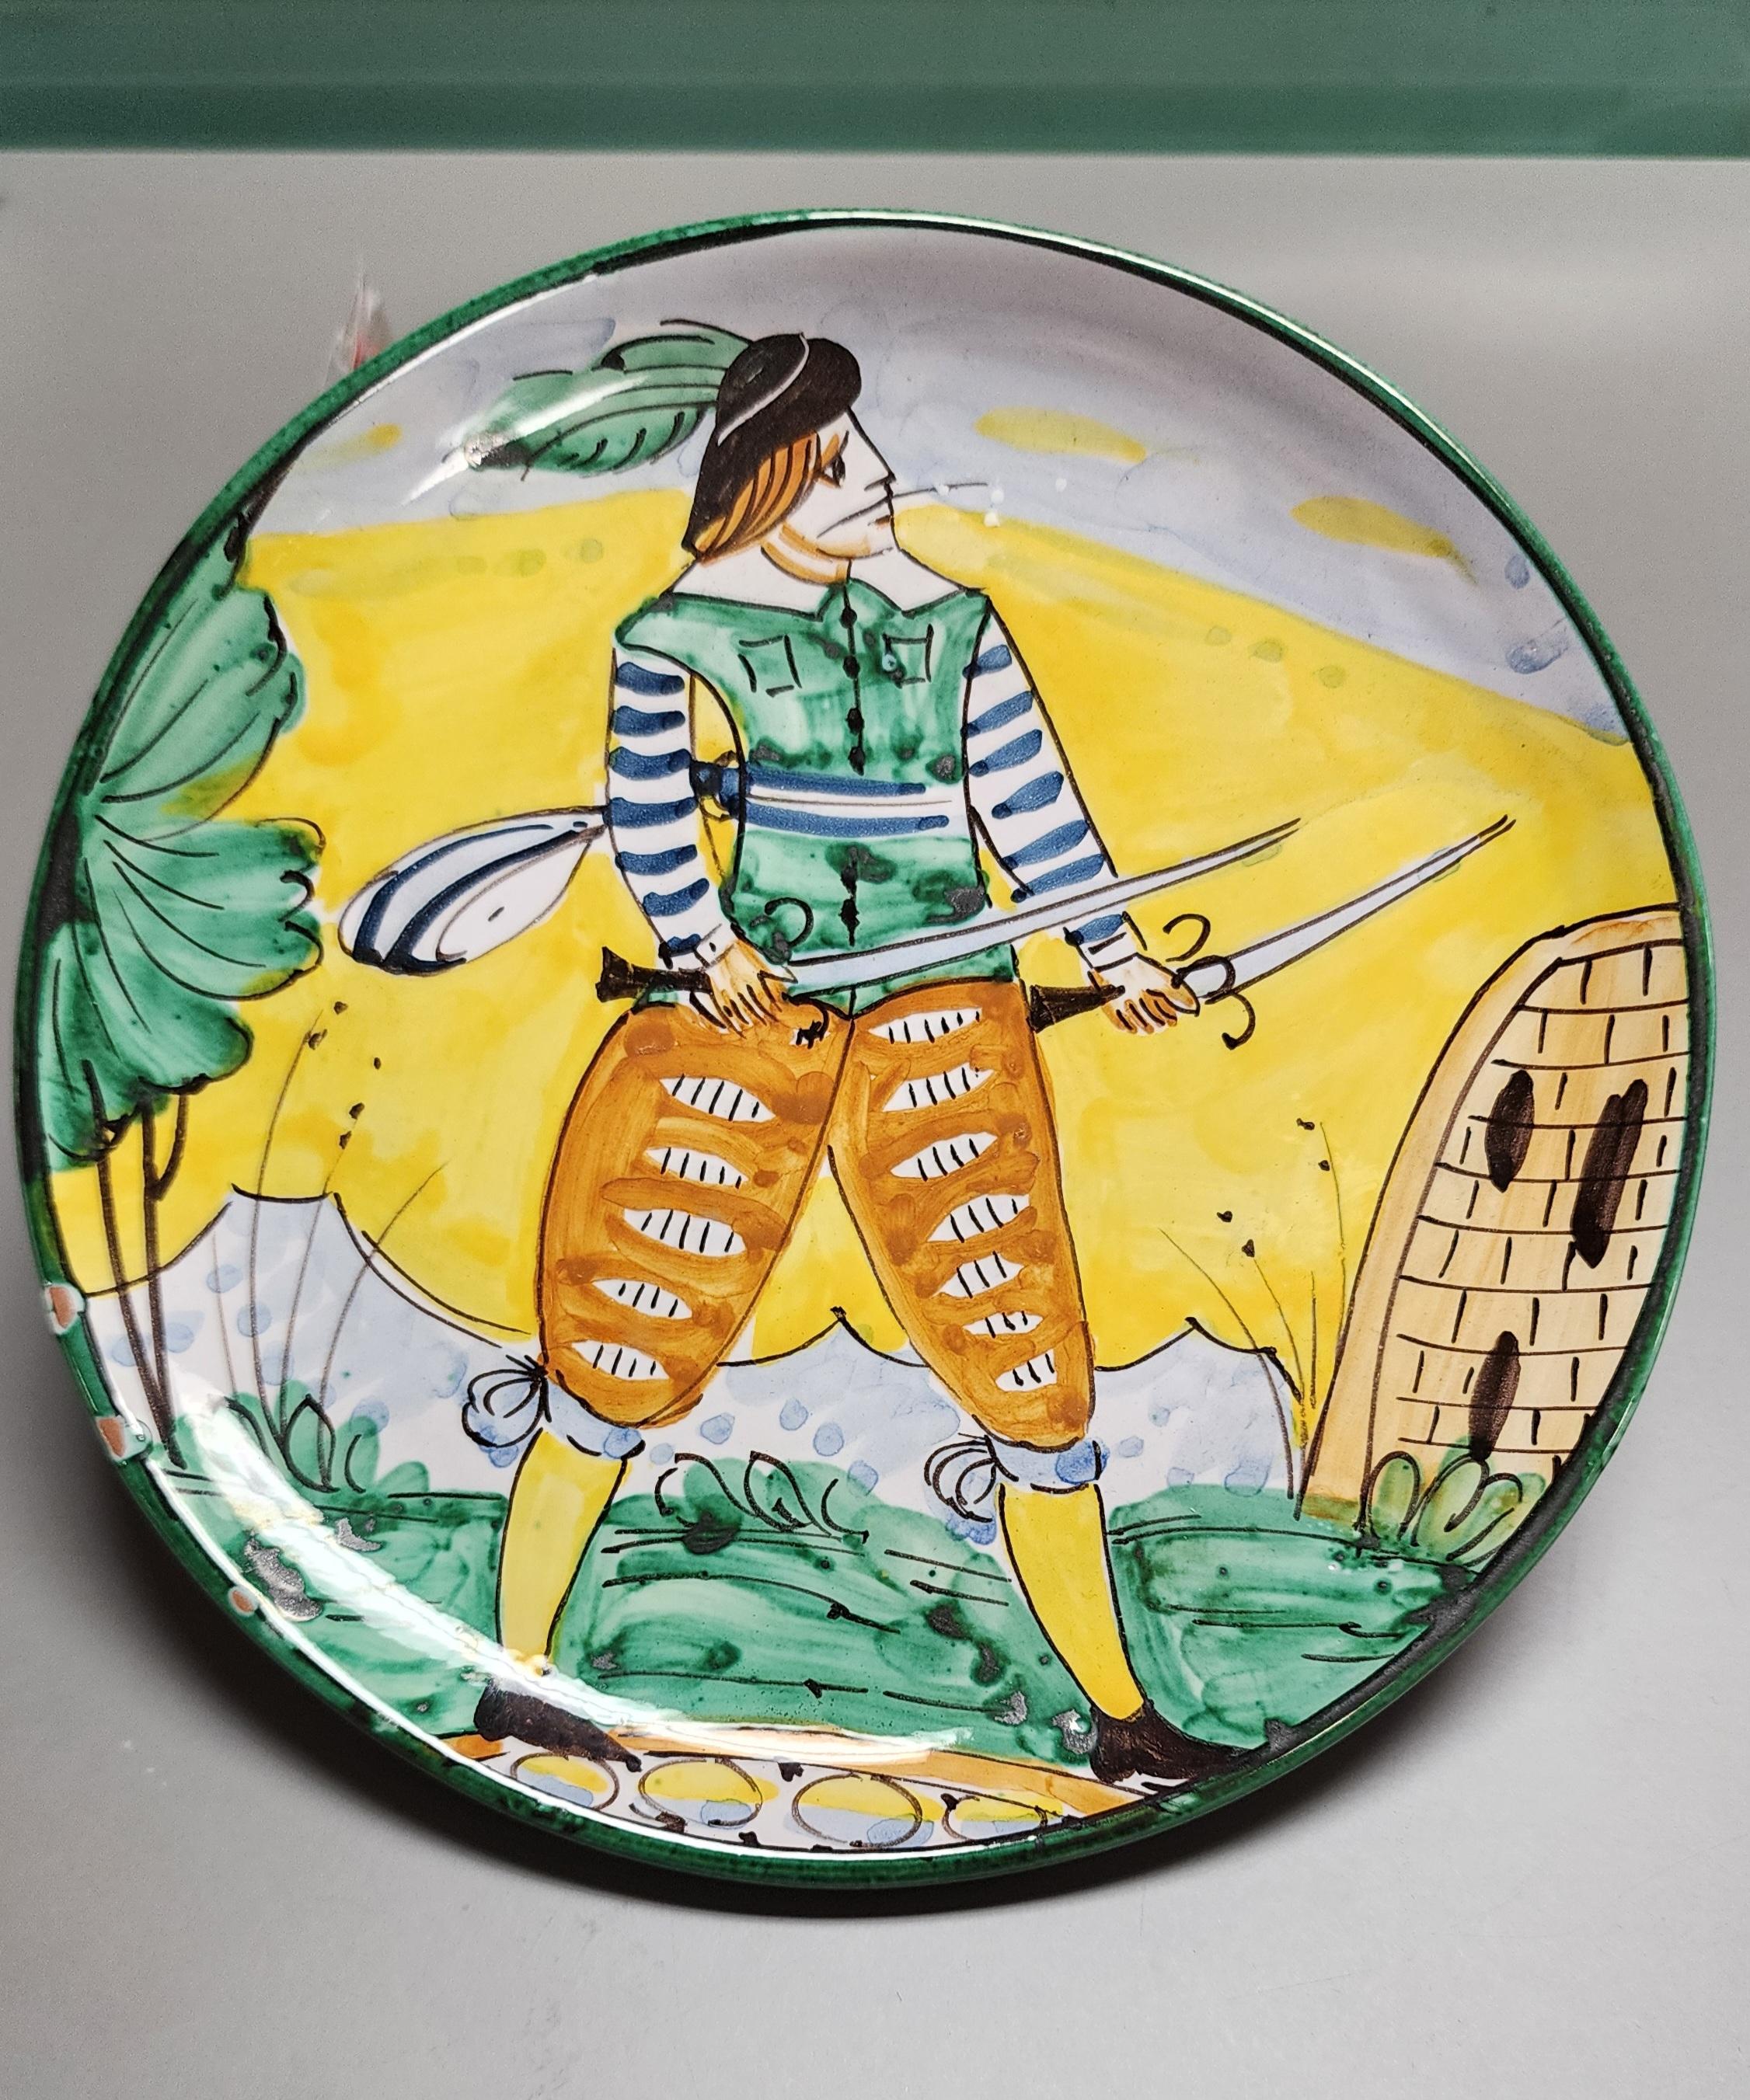 Cette assiette en poterie italienne a été fabriquée par la célèbre société Bitossi. L'œuvre d'art représente un soldat en tenue italienne traditionnelle brandissant deux épées. Les couleurs vives des vêtements et le fond jaune vibrant sont typiques